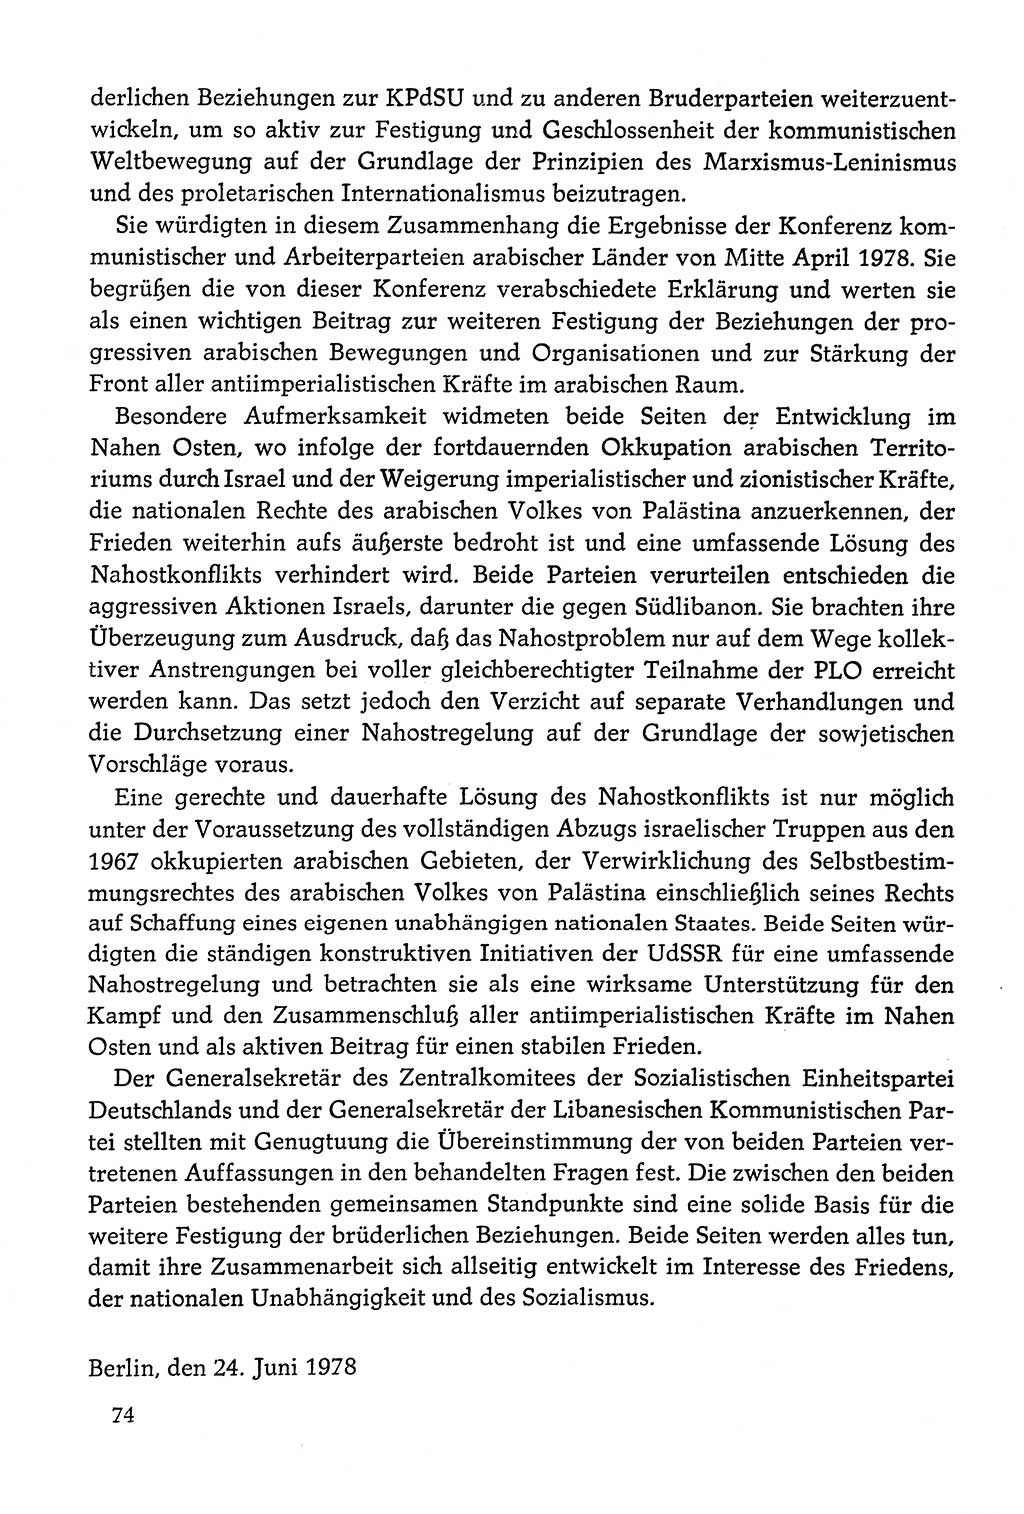 Dokumente der Sozialistischen Einheitspartei Deutschlands (SED) [Deutsche Demokratische Republik (DDR)] 1978-1979, Seite 74 (Dok. SED DDR 1978-1979, S. 74)